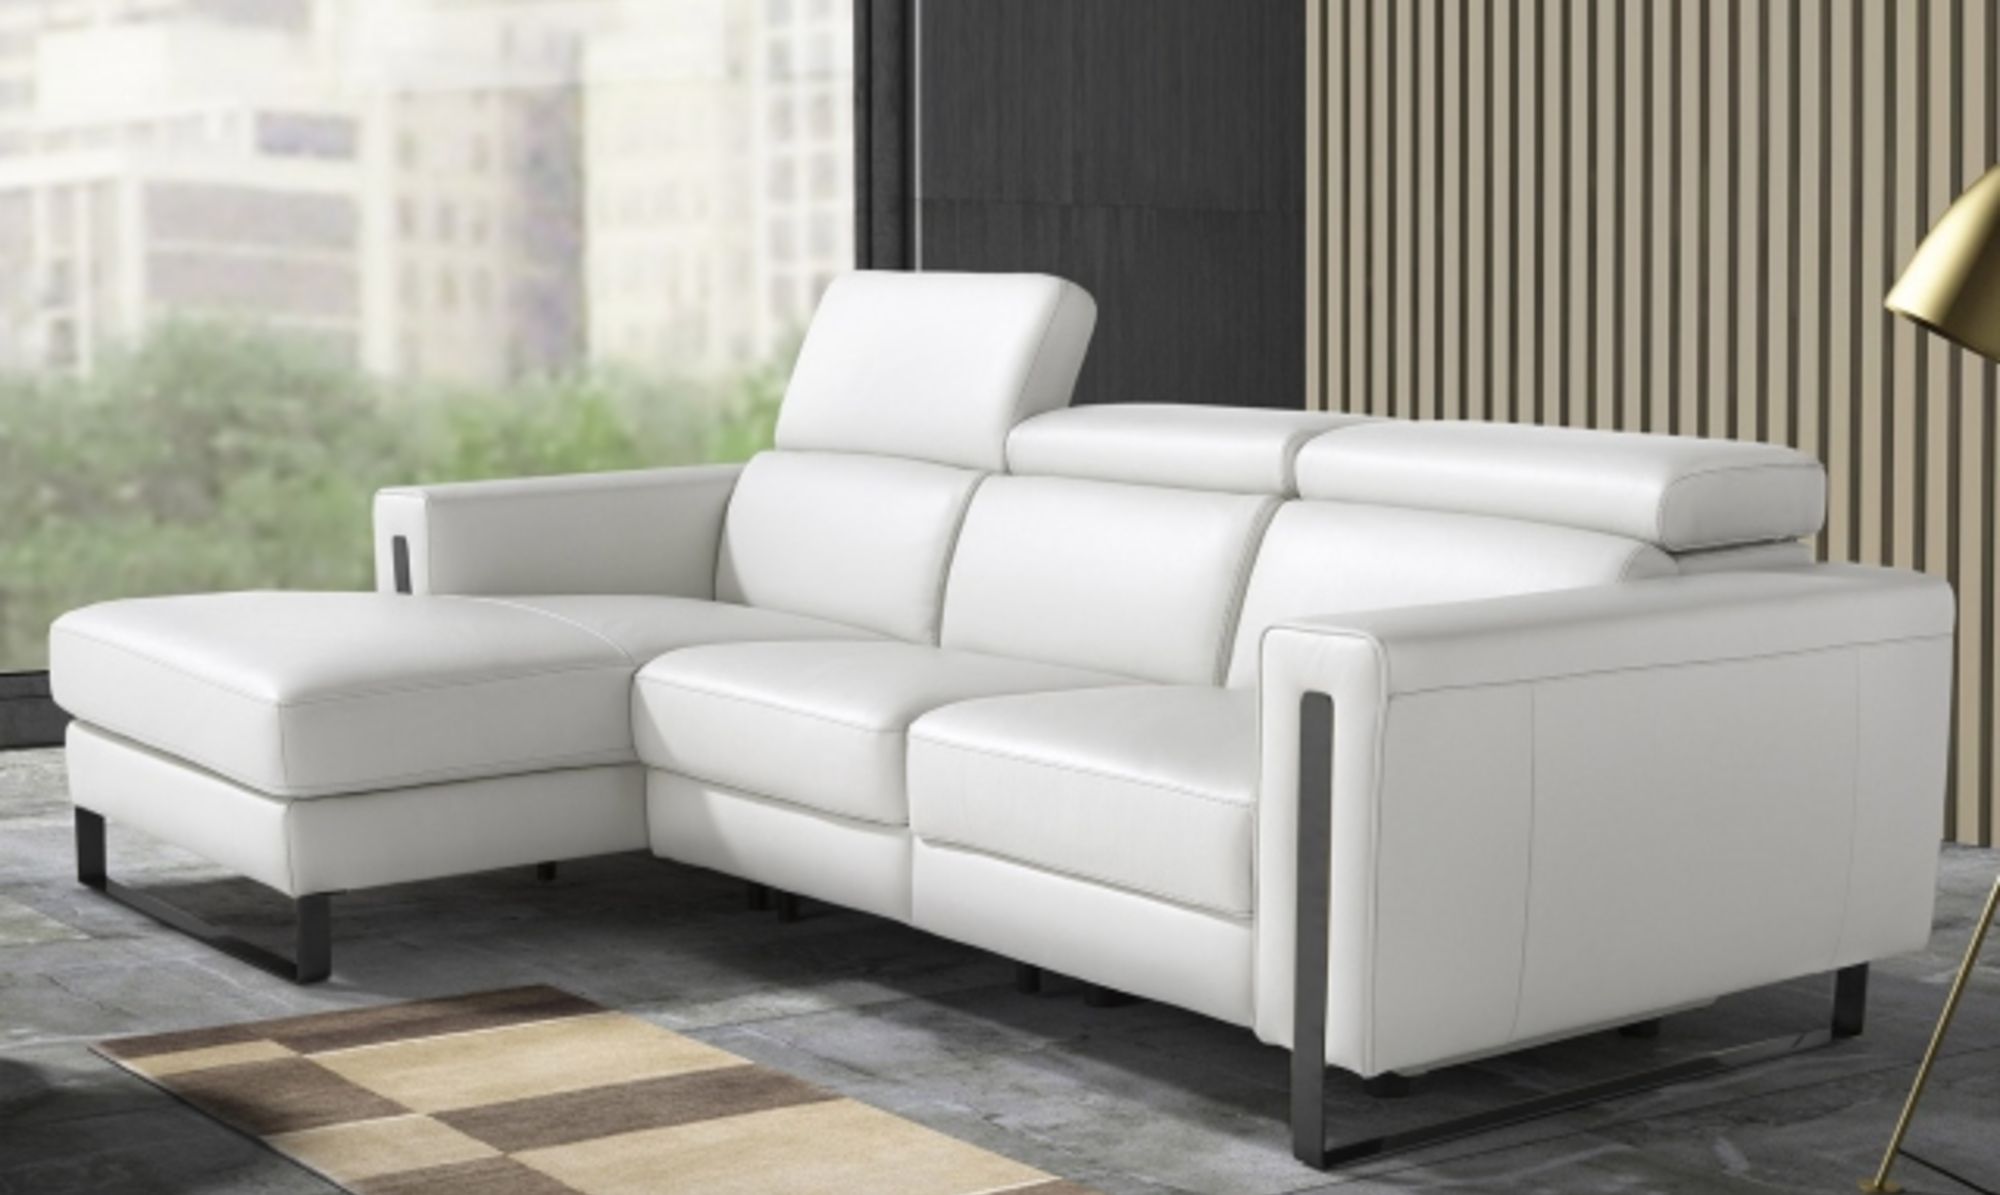 White Leather Sofa Fishpools Lifestyle, Leather White Sofas